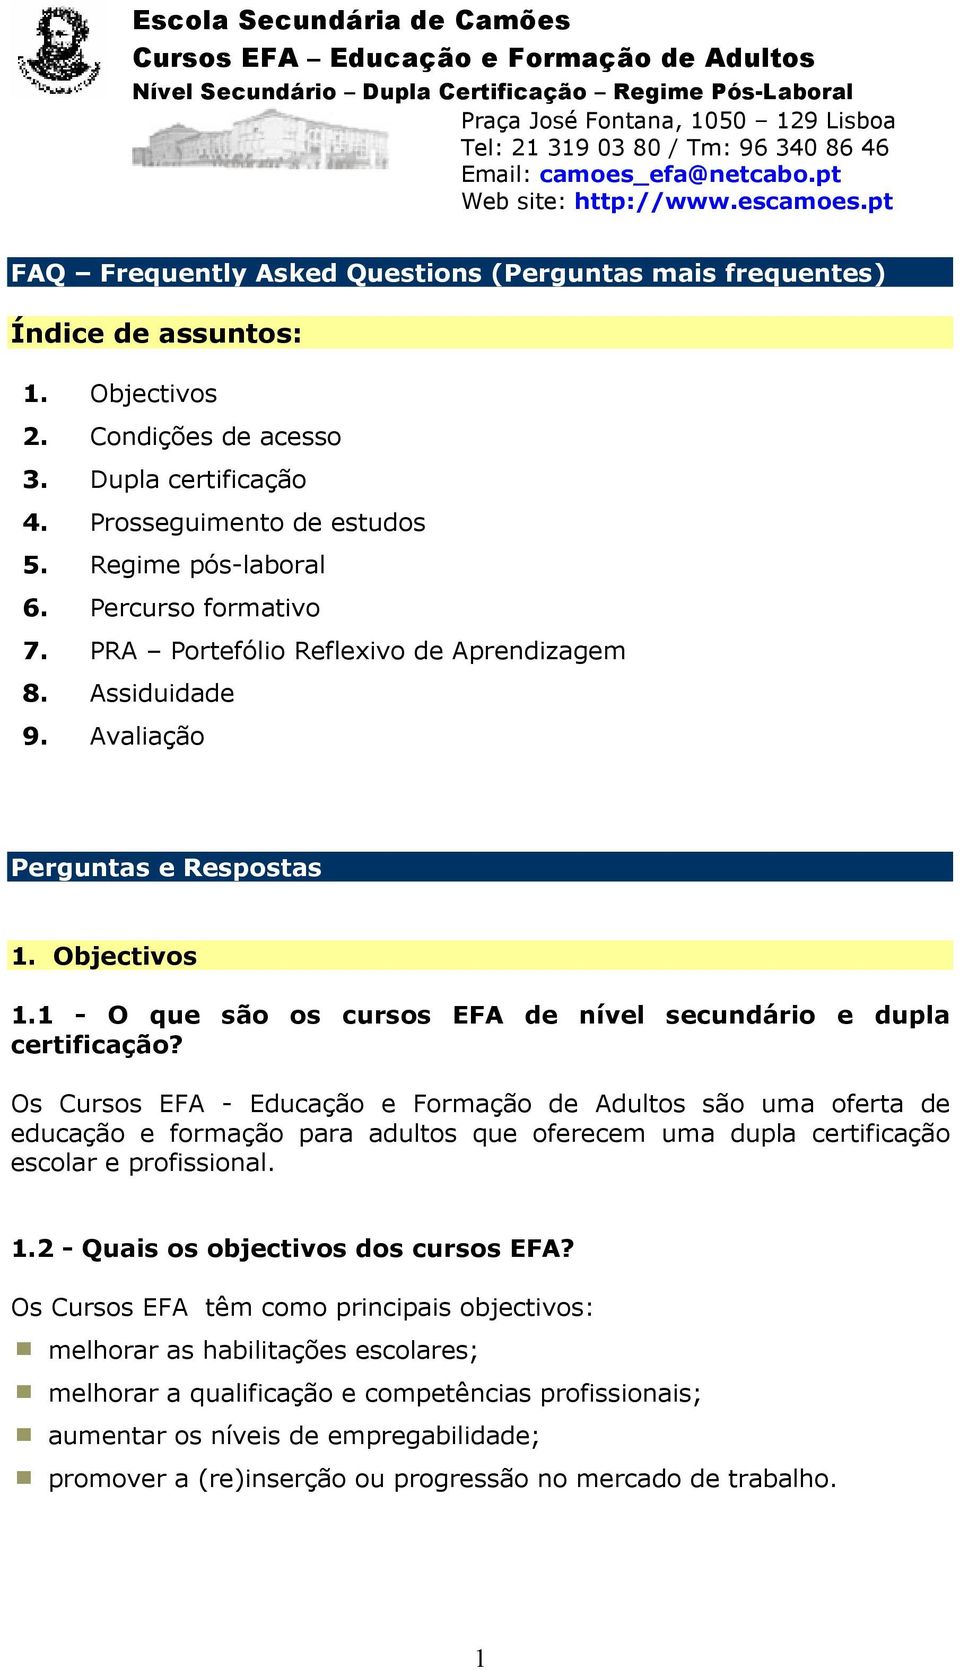 Os Cursos EFA - Educação e Formação de Adultos são uma oferta de educação e formação para adultos que oferecem uma dupla certificação escolar e profissional. 1.2 - Quais os objectivos dos cursos EFA?